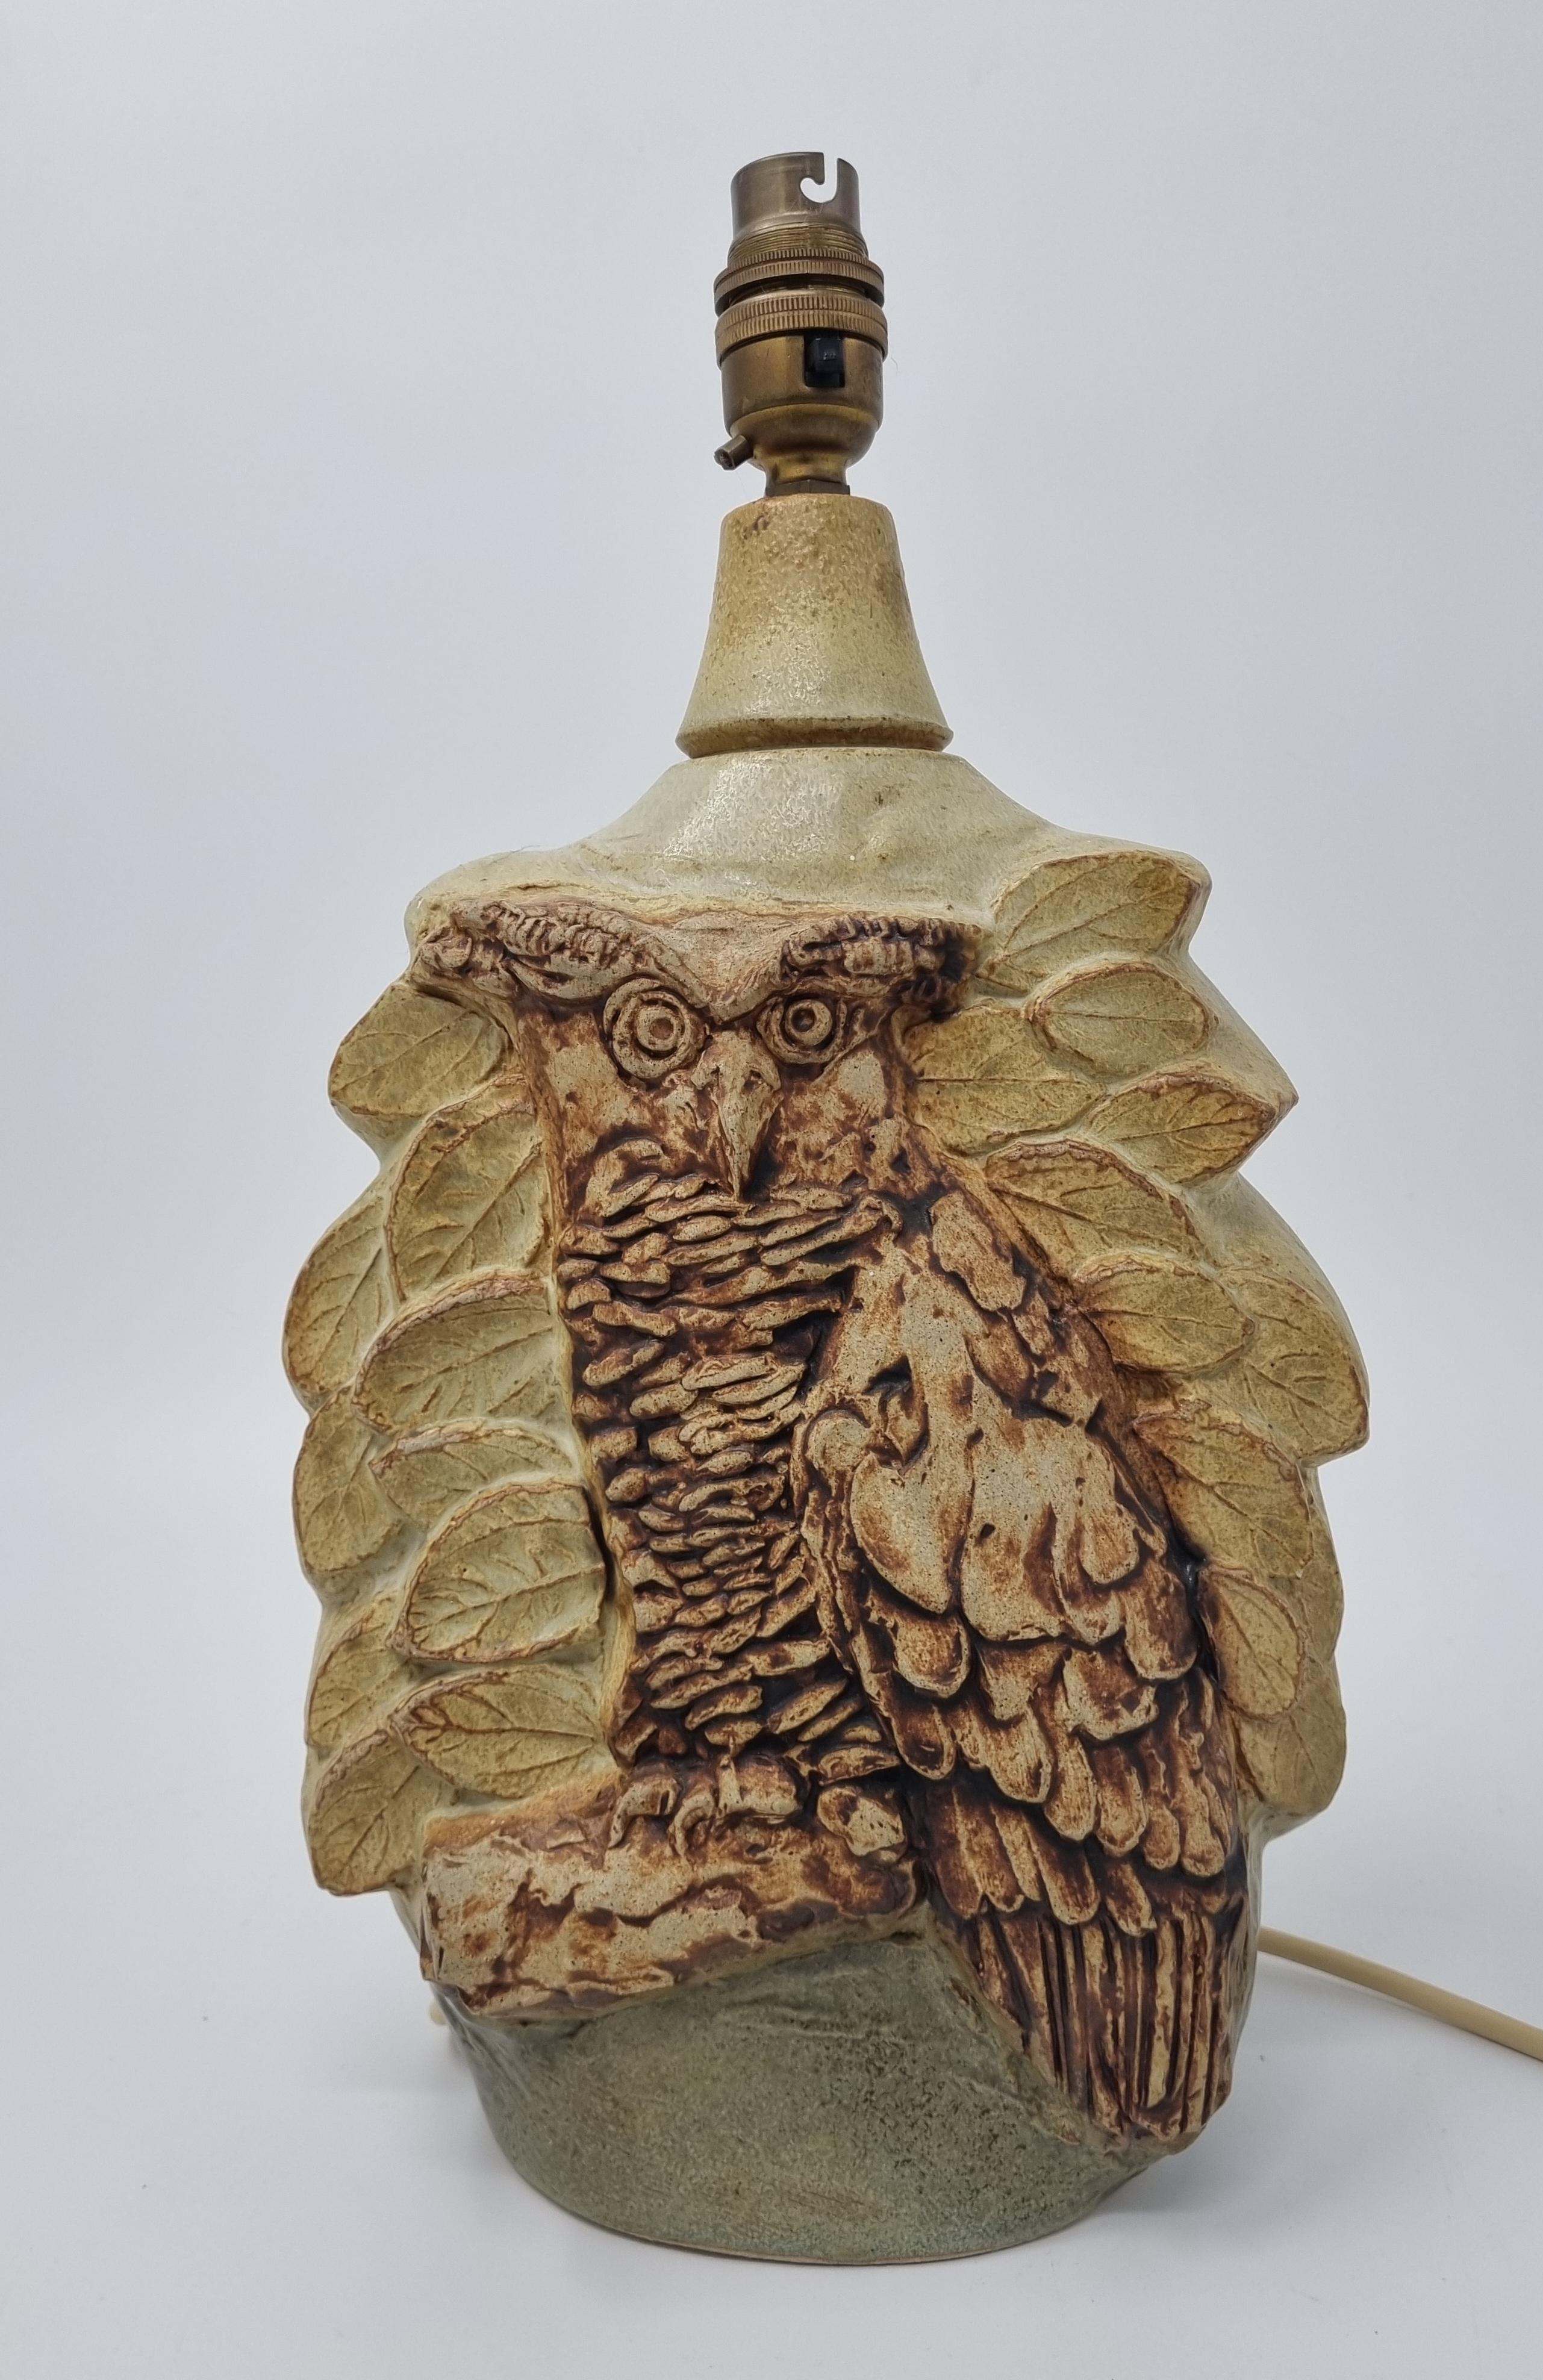 Bernard Rooke Studio Pottery Brutalist Style Owl Lamp ist eine wunderschön geformte Lampe des bekannten britischen Künstlers und Töpfers Bernard Rooke. Es ist ein schönes Beispiel für seine Arbeit.

Bernard Rookes künstlerischer Weg begann an der